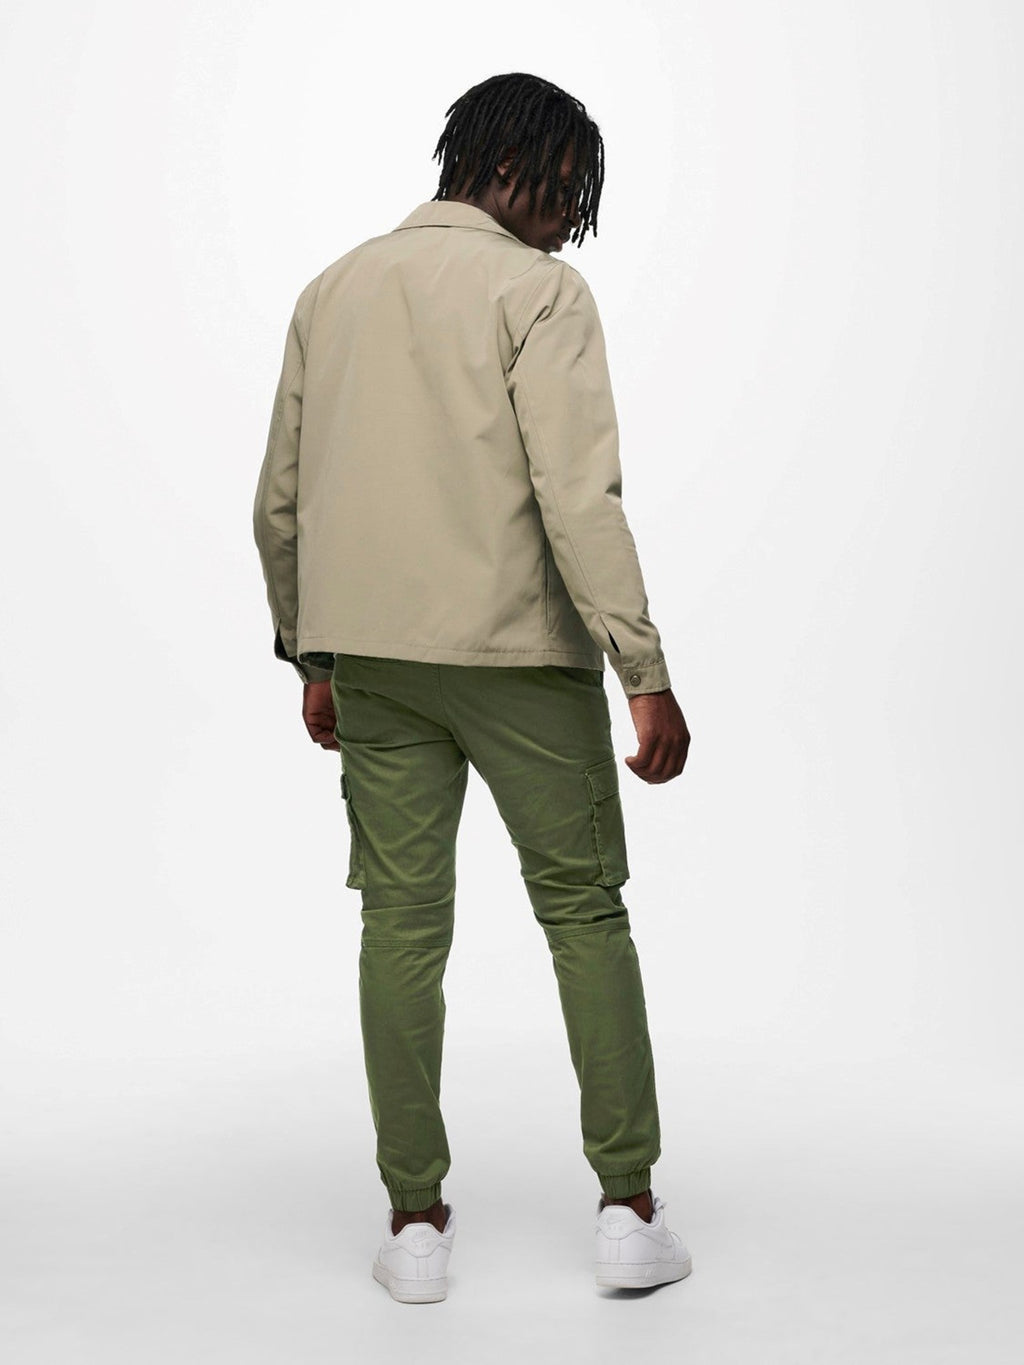 Jayden zip jacket - Green